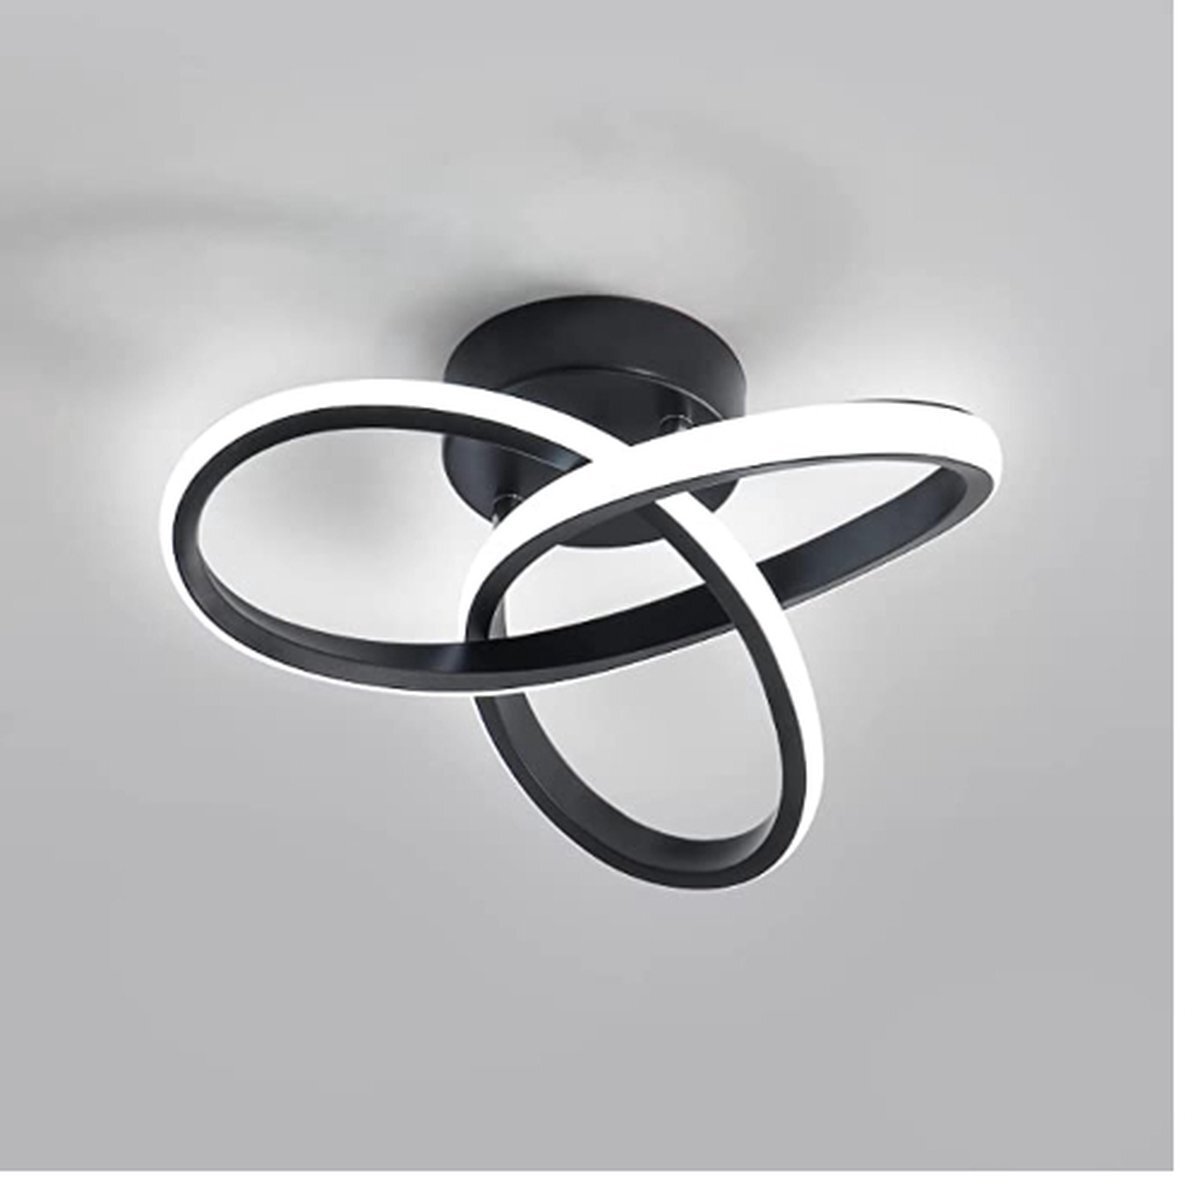 Lichtendirect Lichtendirect- LED Plafondlamp zwart-Ringen –Plafonniere- Modern- Binnenverlichting-Hal slaapkamer lamp l: 24CM - 3.000 K - 12W